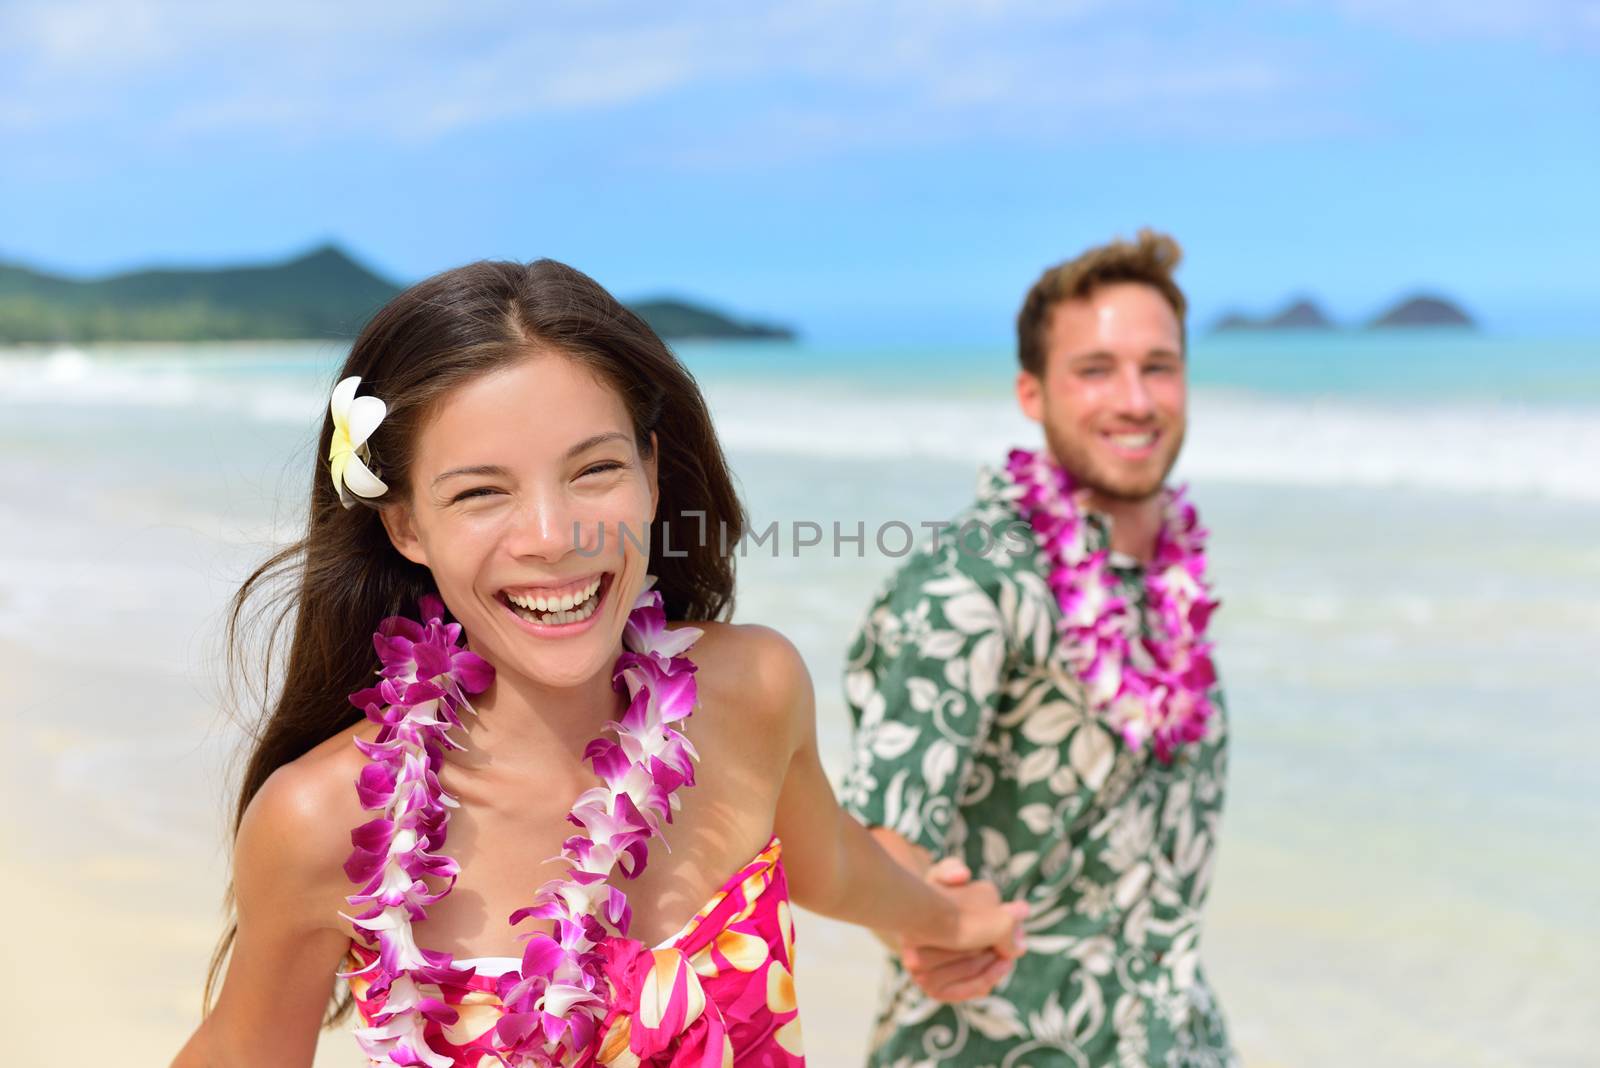 Happy Hawaii beach holiday couple in Hawaiian leis by Maridav